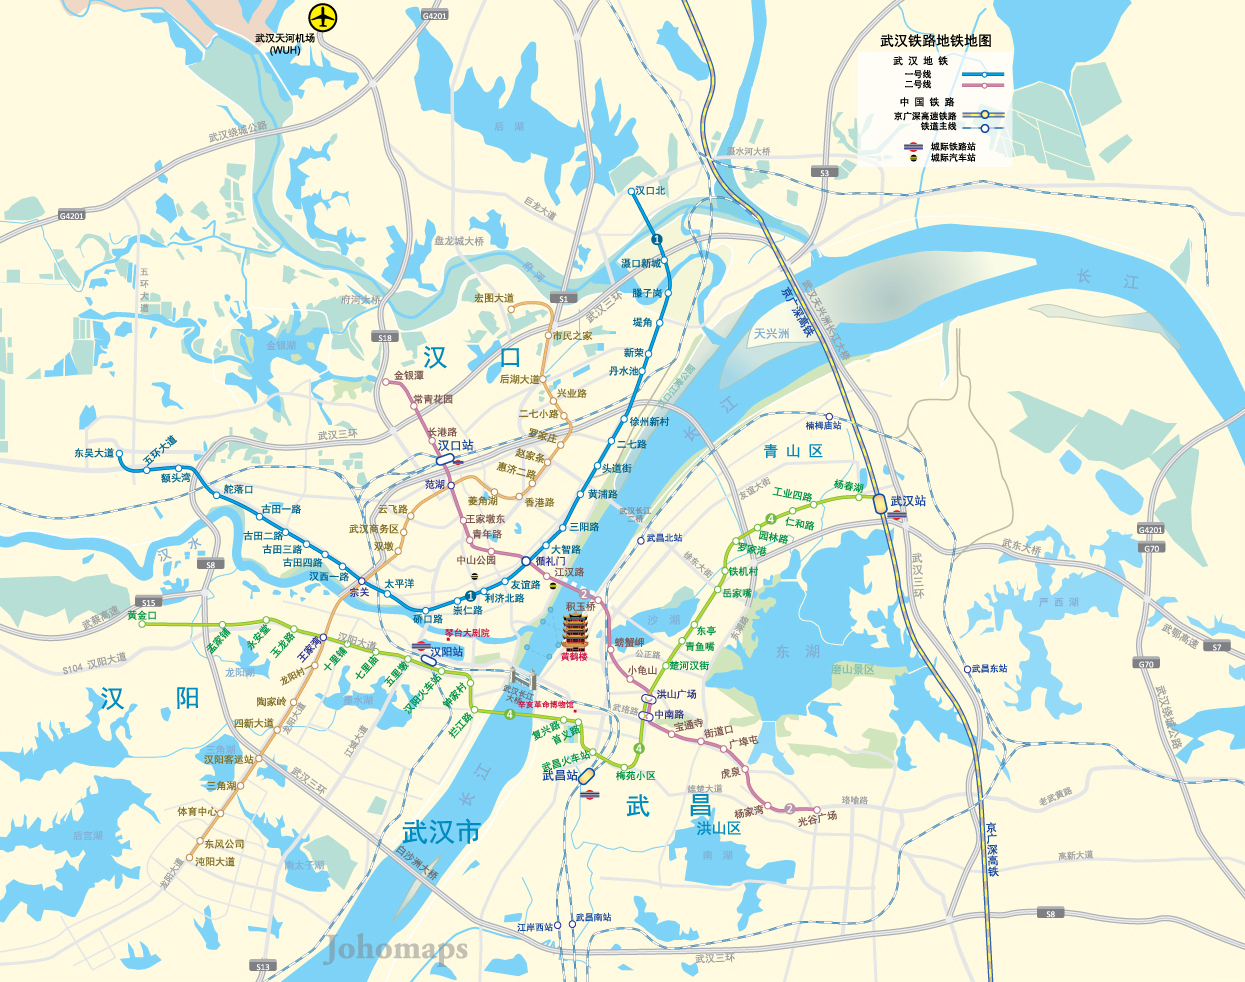 Subway Map of Wuhan / 武汉地铁地图